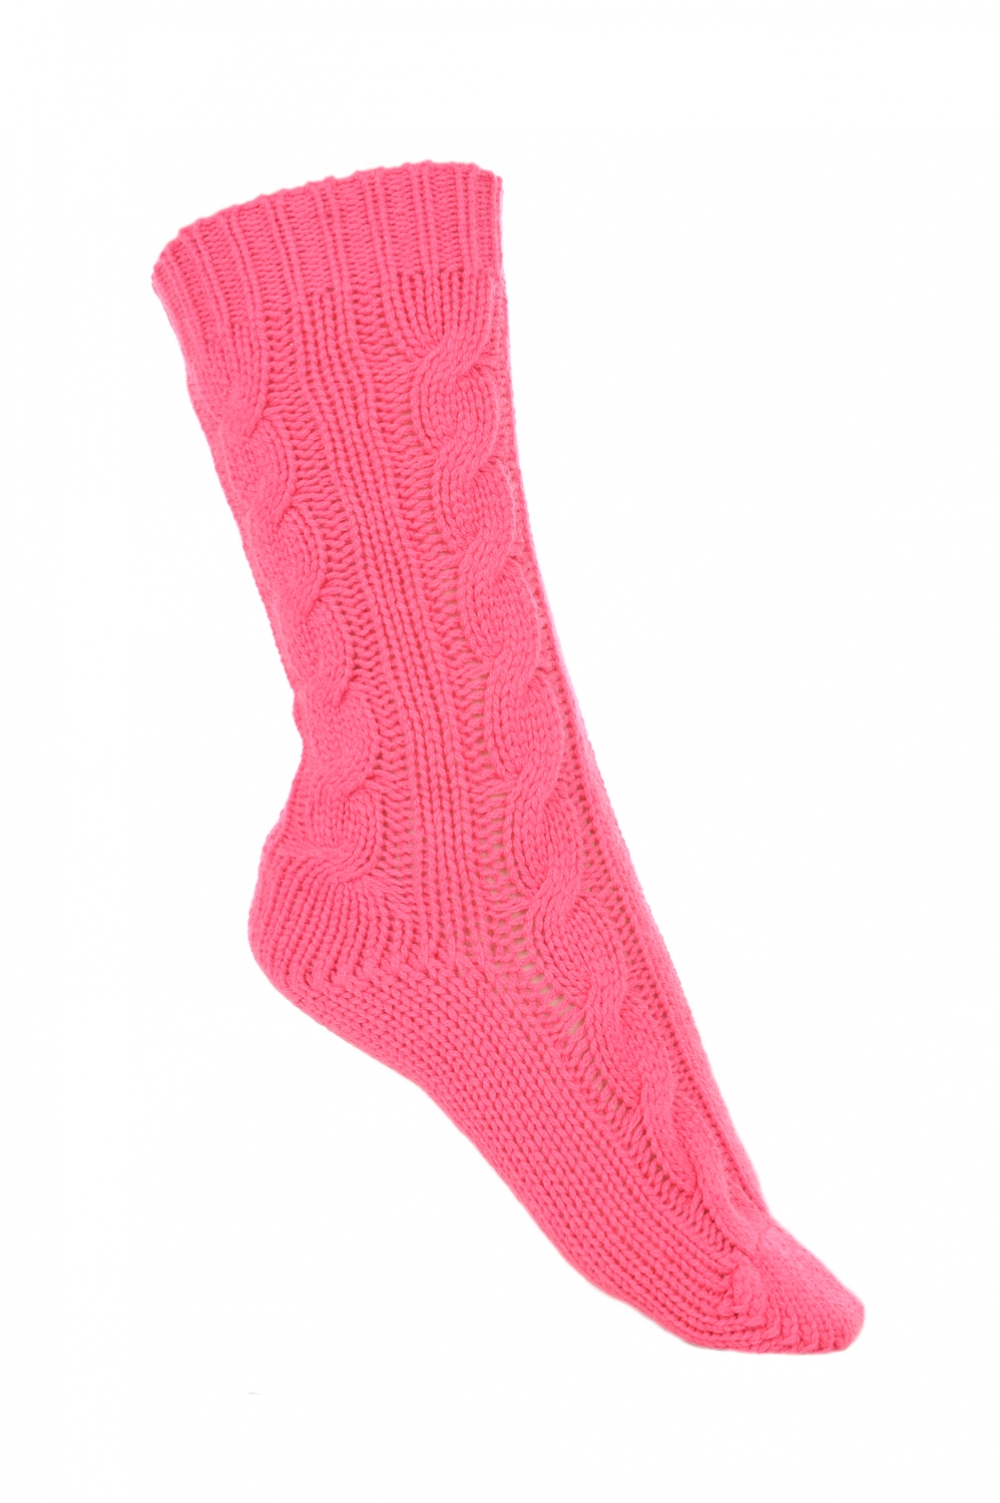 Cachemire accessoires chaussettes pedibus rose shocking 37 41